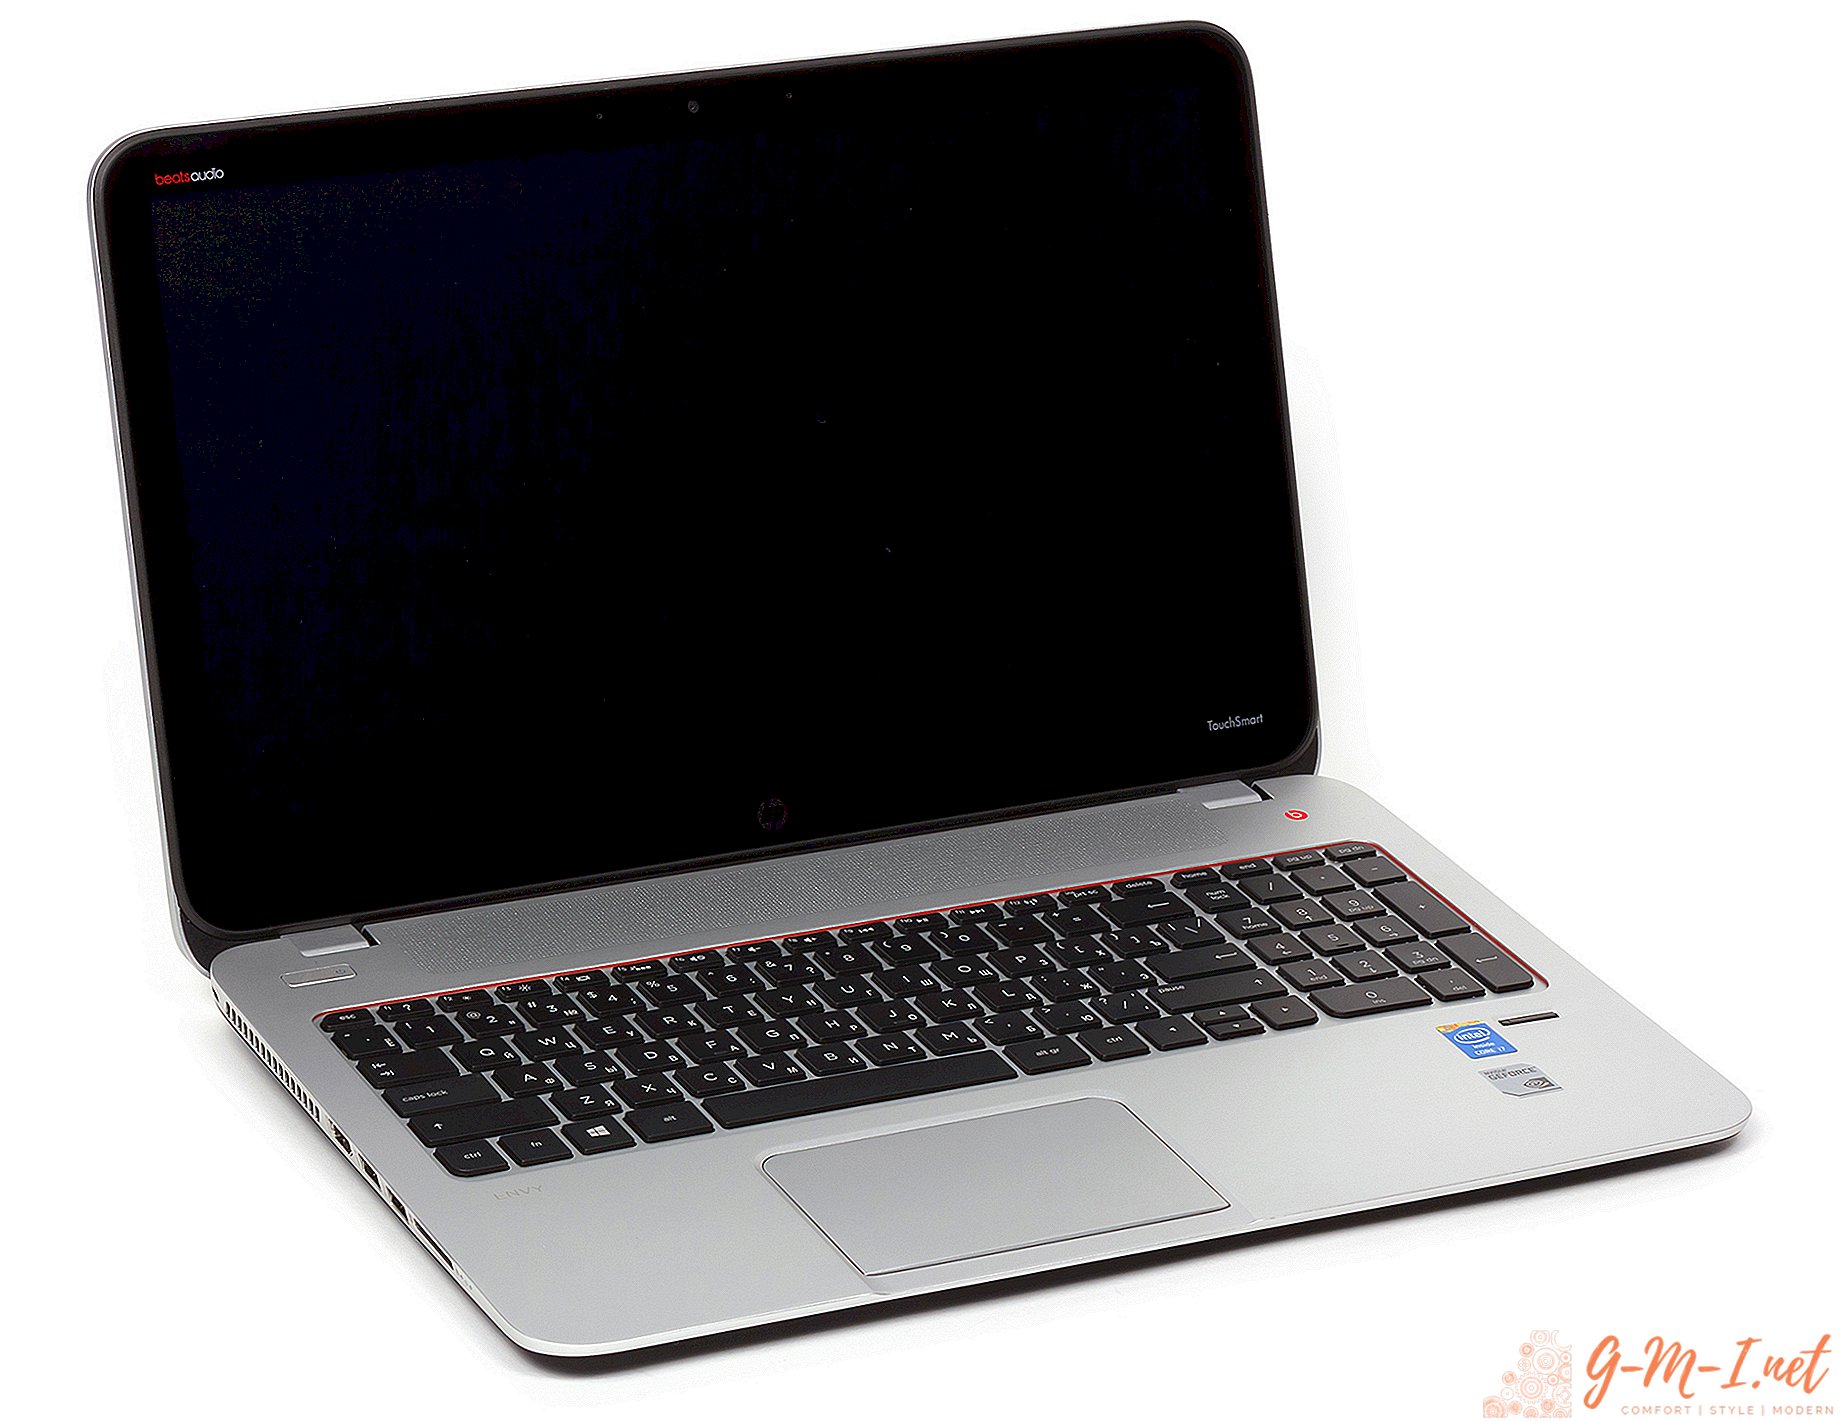 Barra vertical na tela do laptop